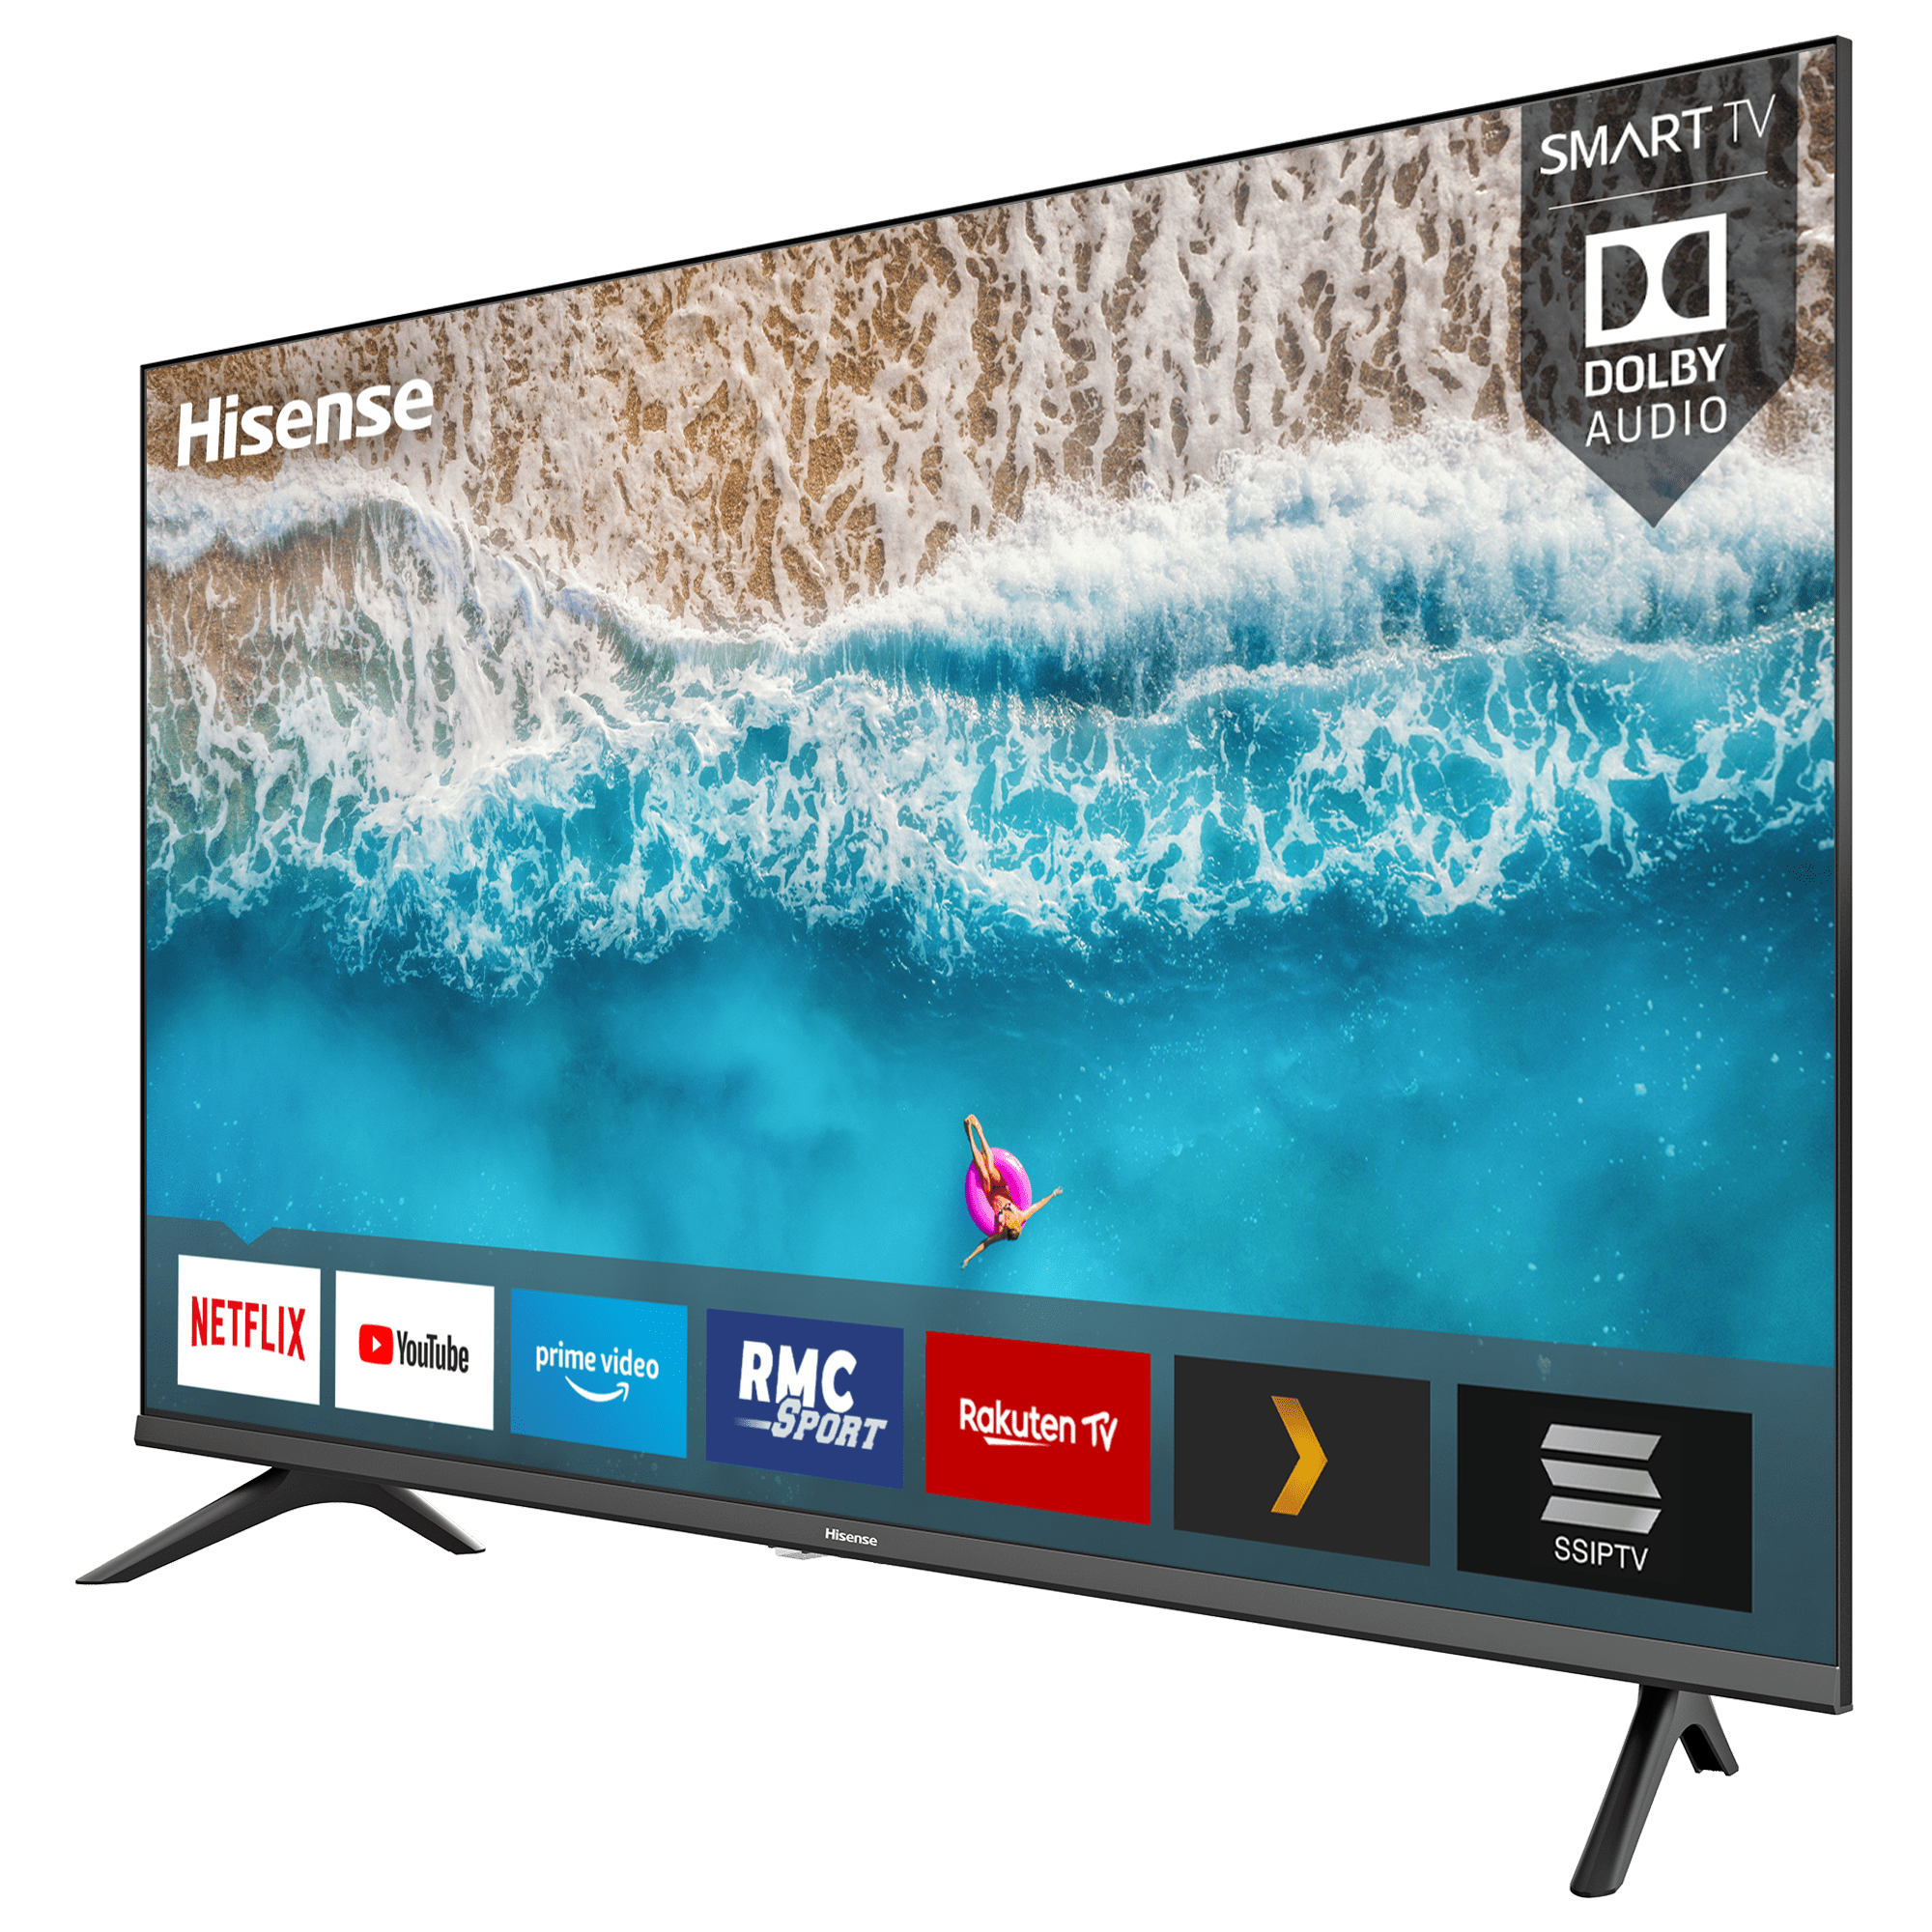 TV Full HD, Smart TV40 Série AE5500F, Hisense